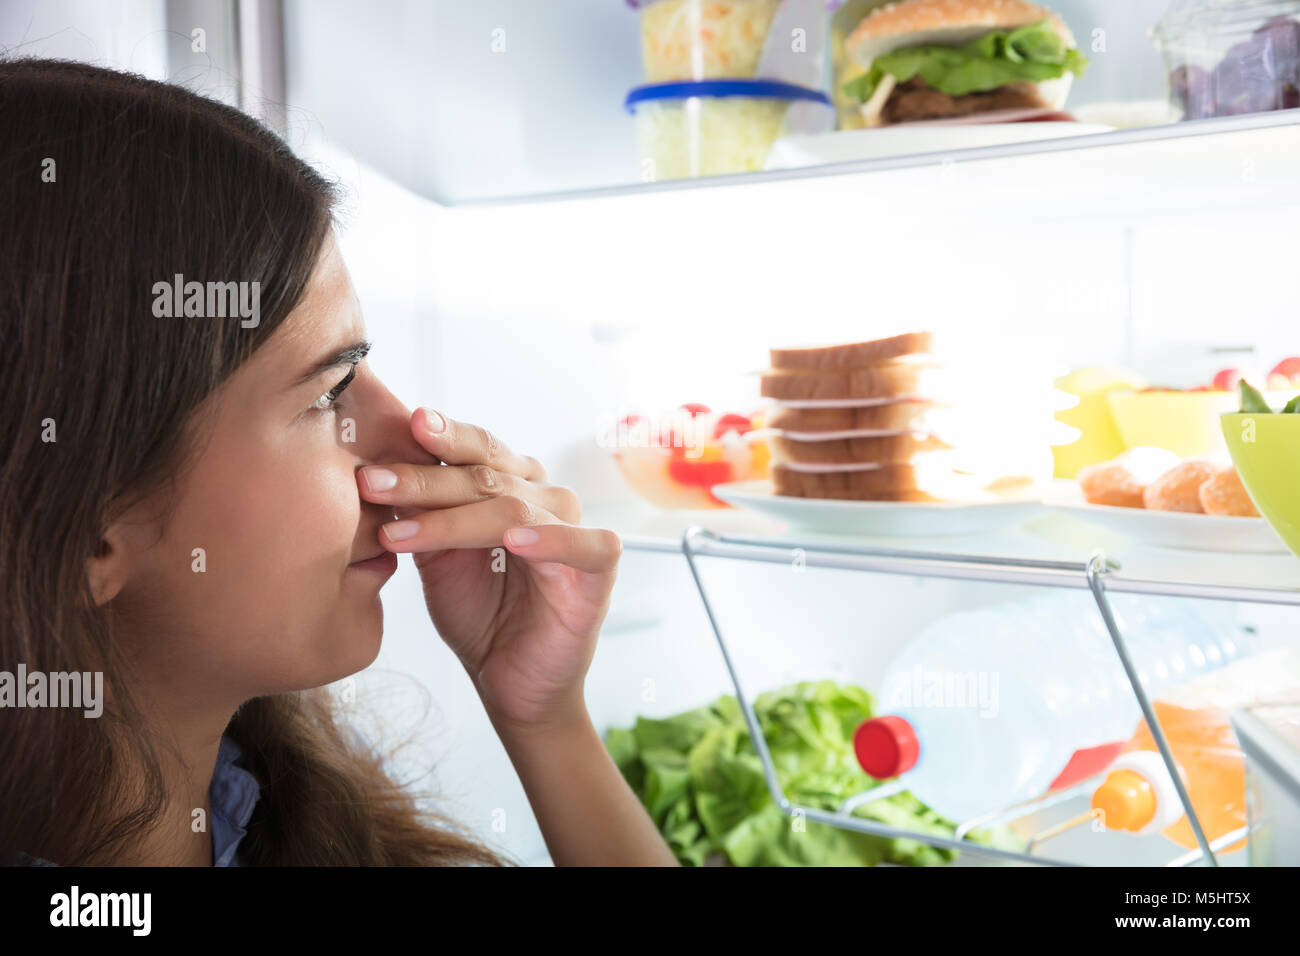 Close-up of a Young Woman Holding Her Nose près de mauvais aliments dans réfrigérateur Banque D'Images